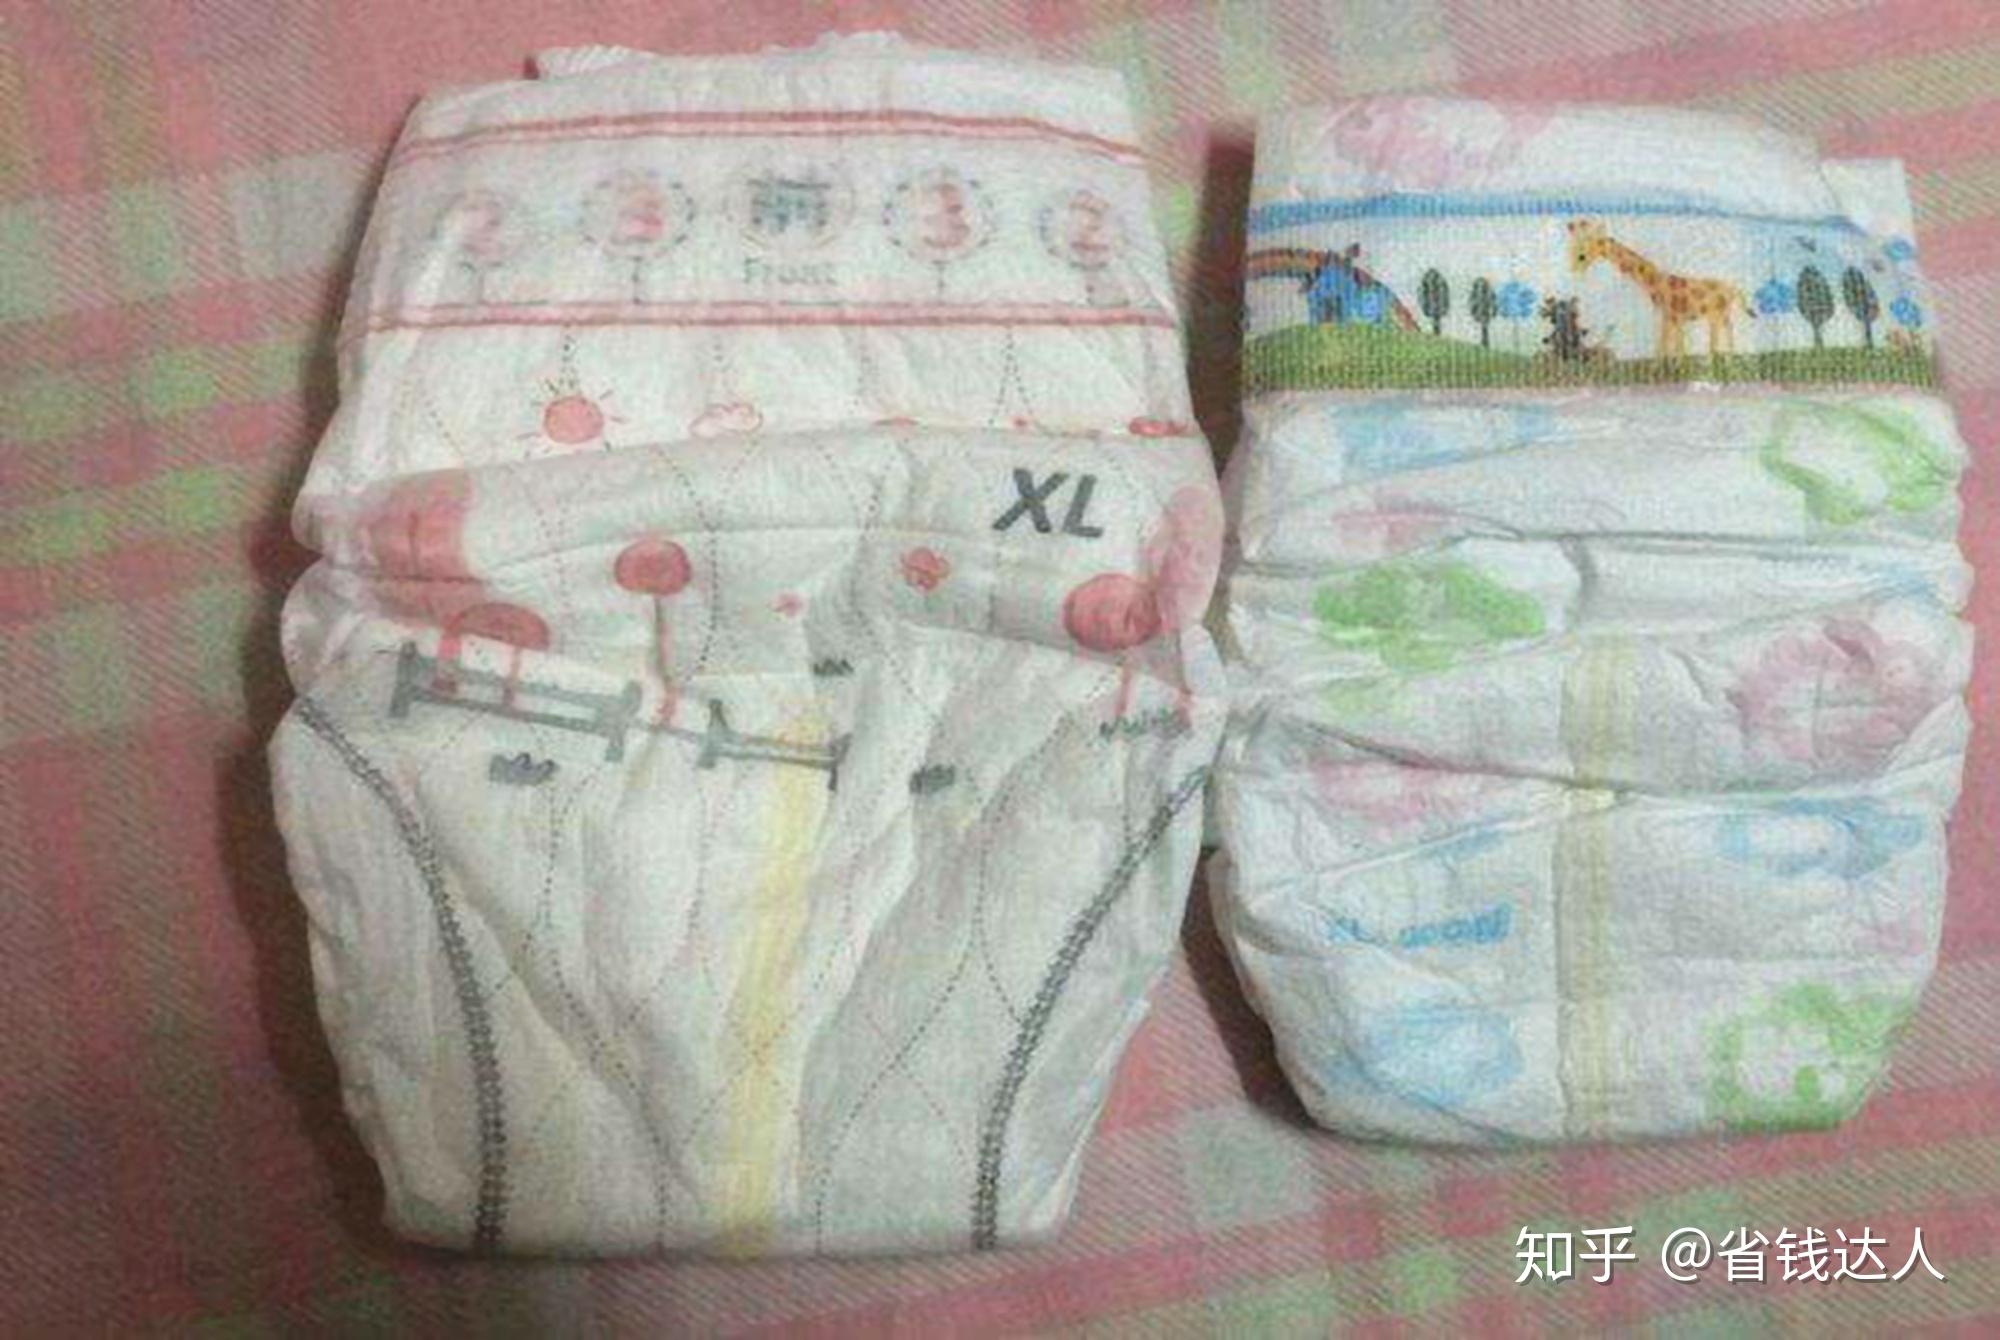 宝妈们通常怎么给宝宝选纸尿裤的呢？不同品牌有什么区别？ - 知乎